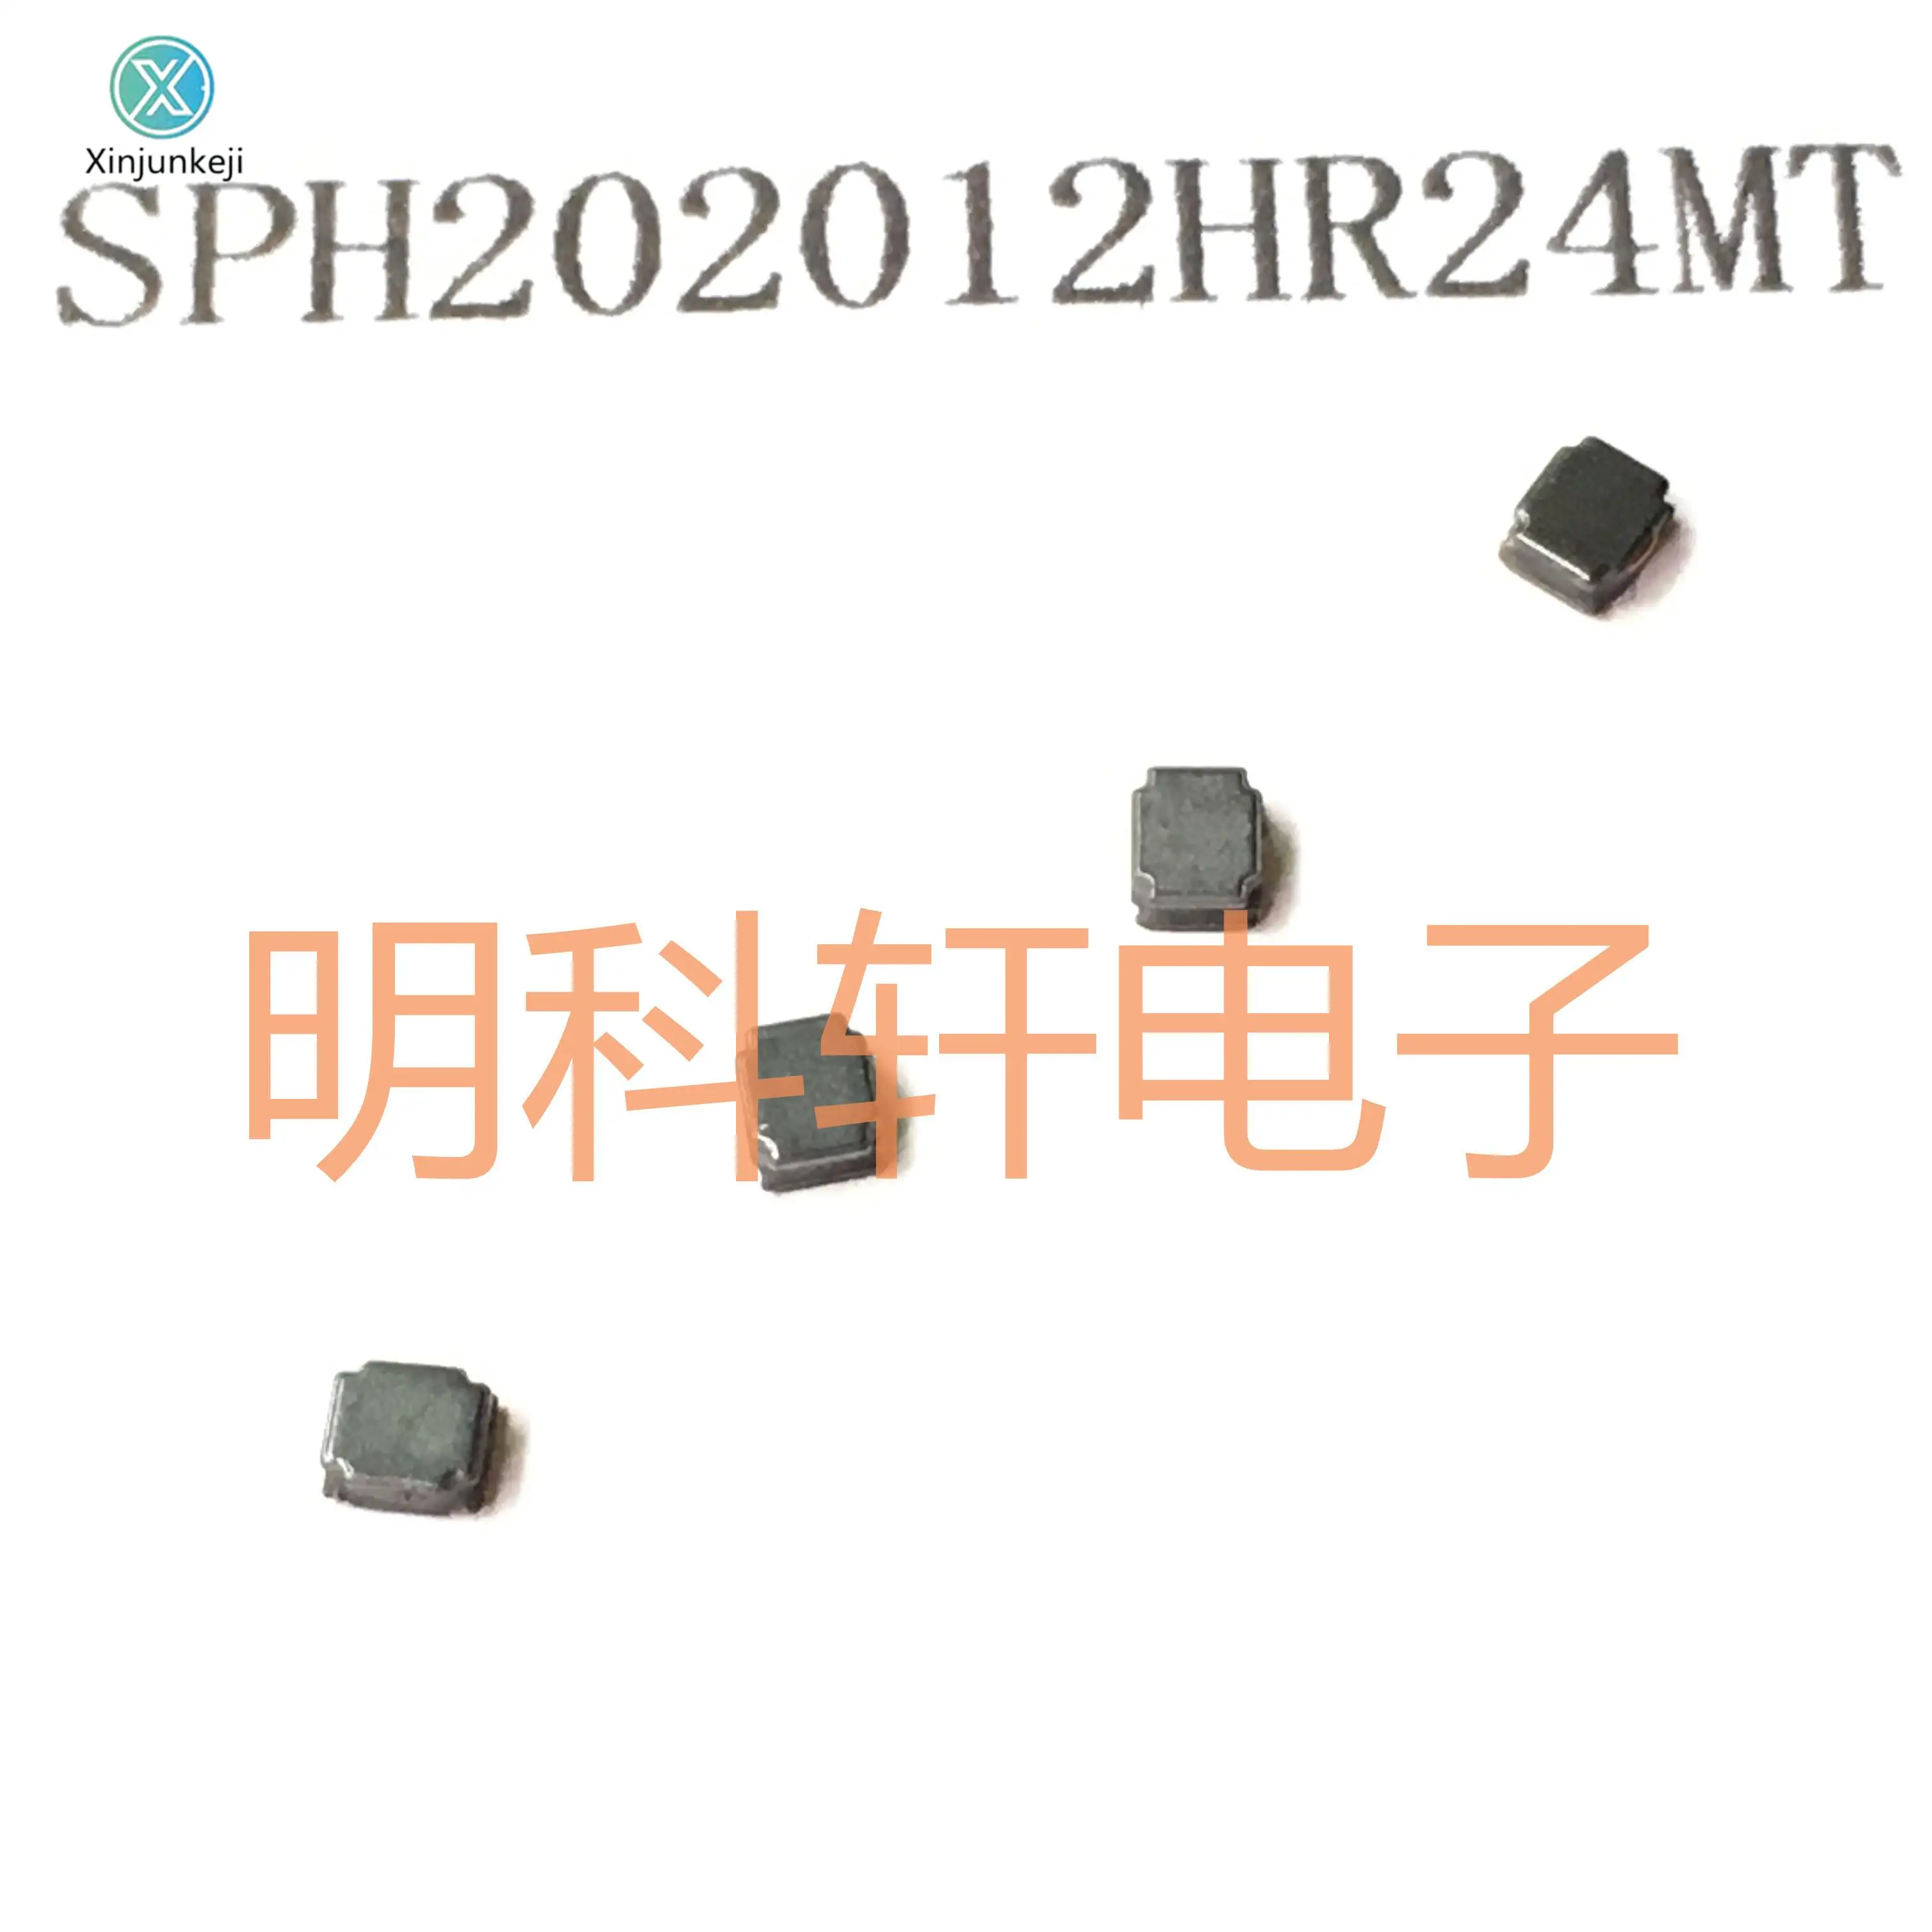 

30 шт. Оригинальный Новый индуктор мощности SPH202012HR24MT SMD 2,0 мкГн 2,0*1,2 *